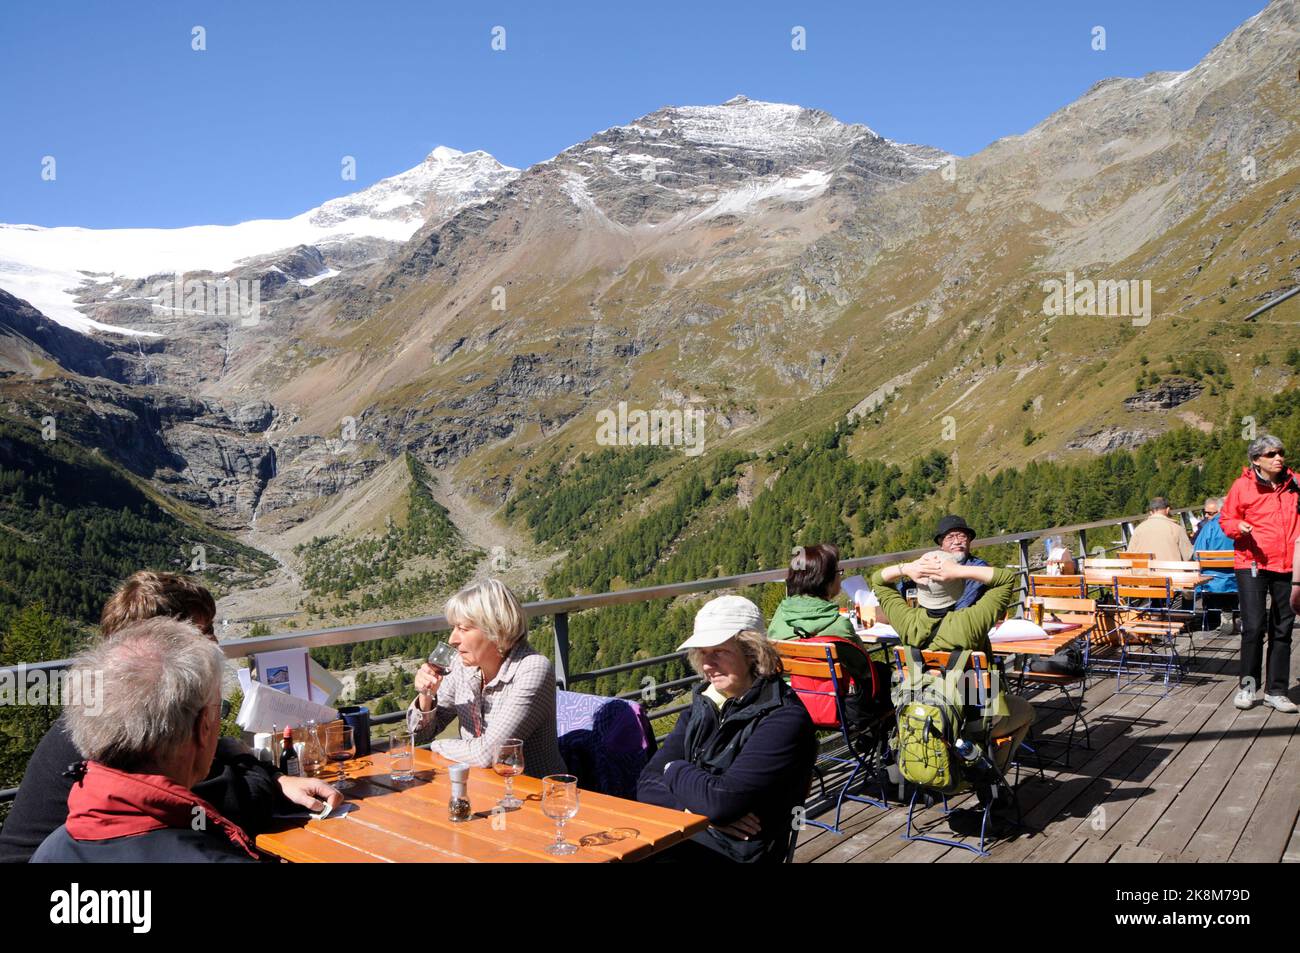 Aussichtsterasse ades Restaurants auf der Alp Grün mit fantastischem Alpenpanorama. Panoramic mountain view from the terrace of the Alp Grüm restauran Stock Photo